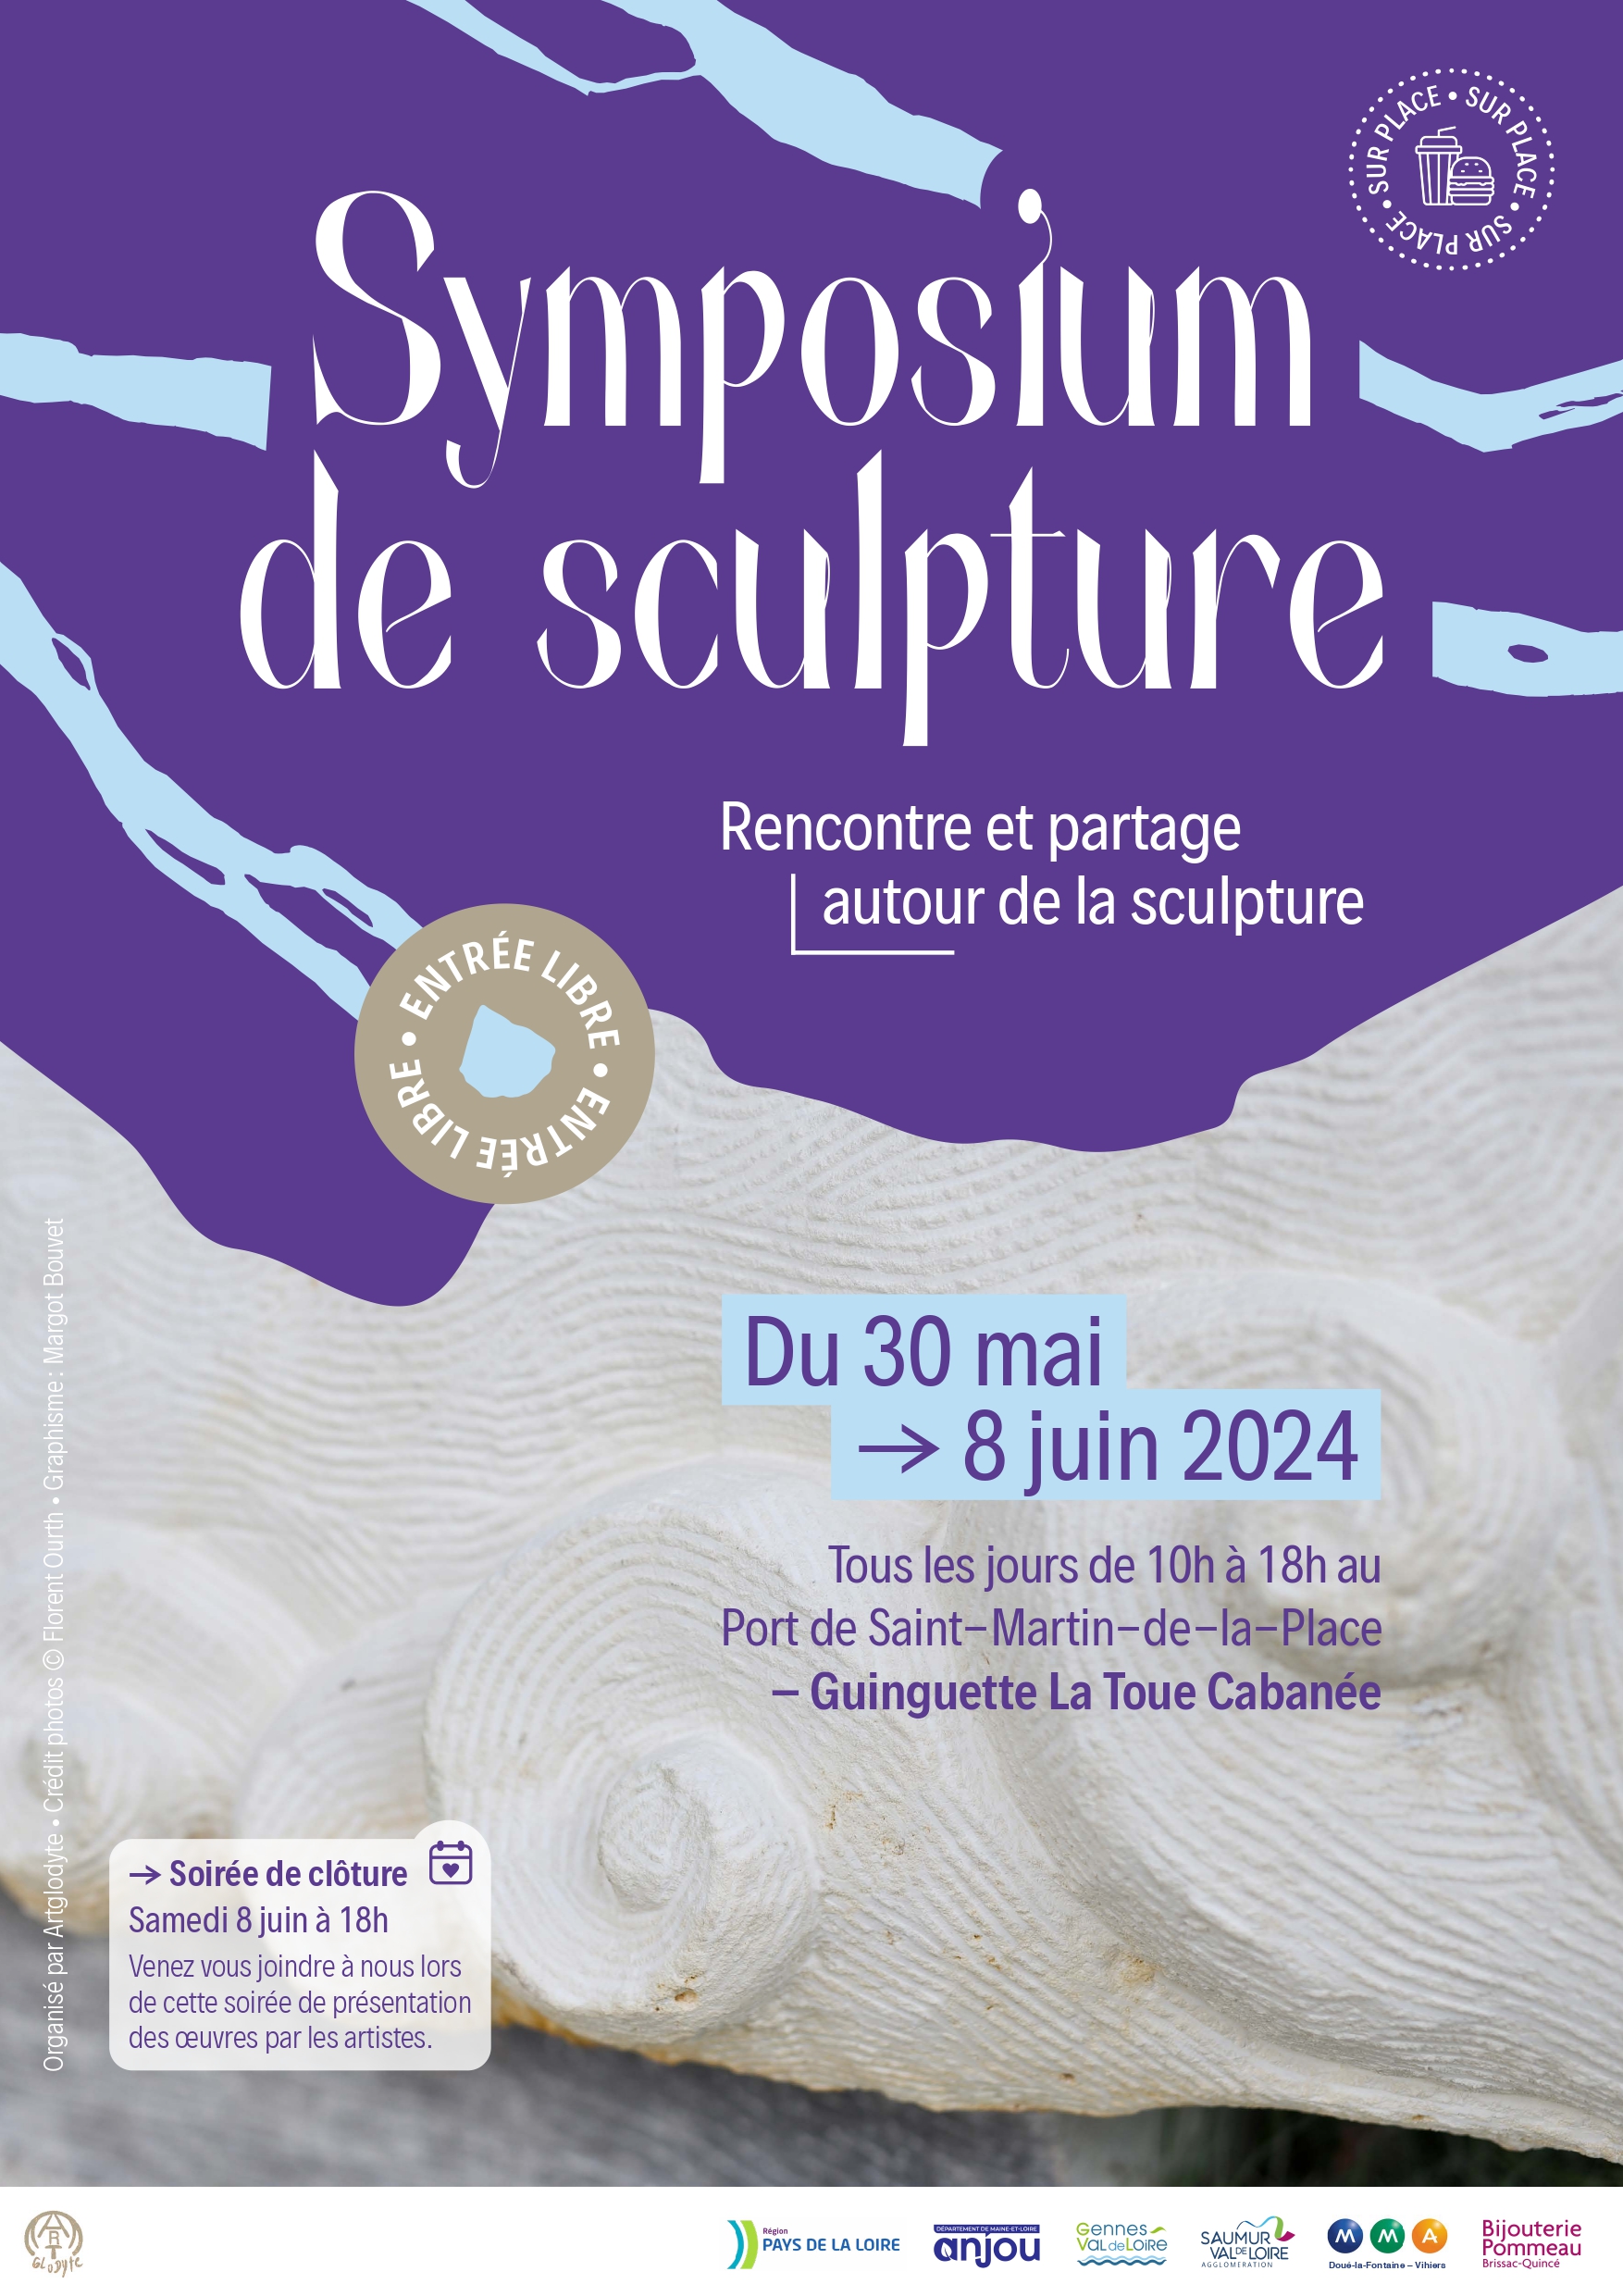 Symposium de culture - Rencontre et partage autour de la sculpture Du 30 mai au 8 juin 2024